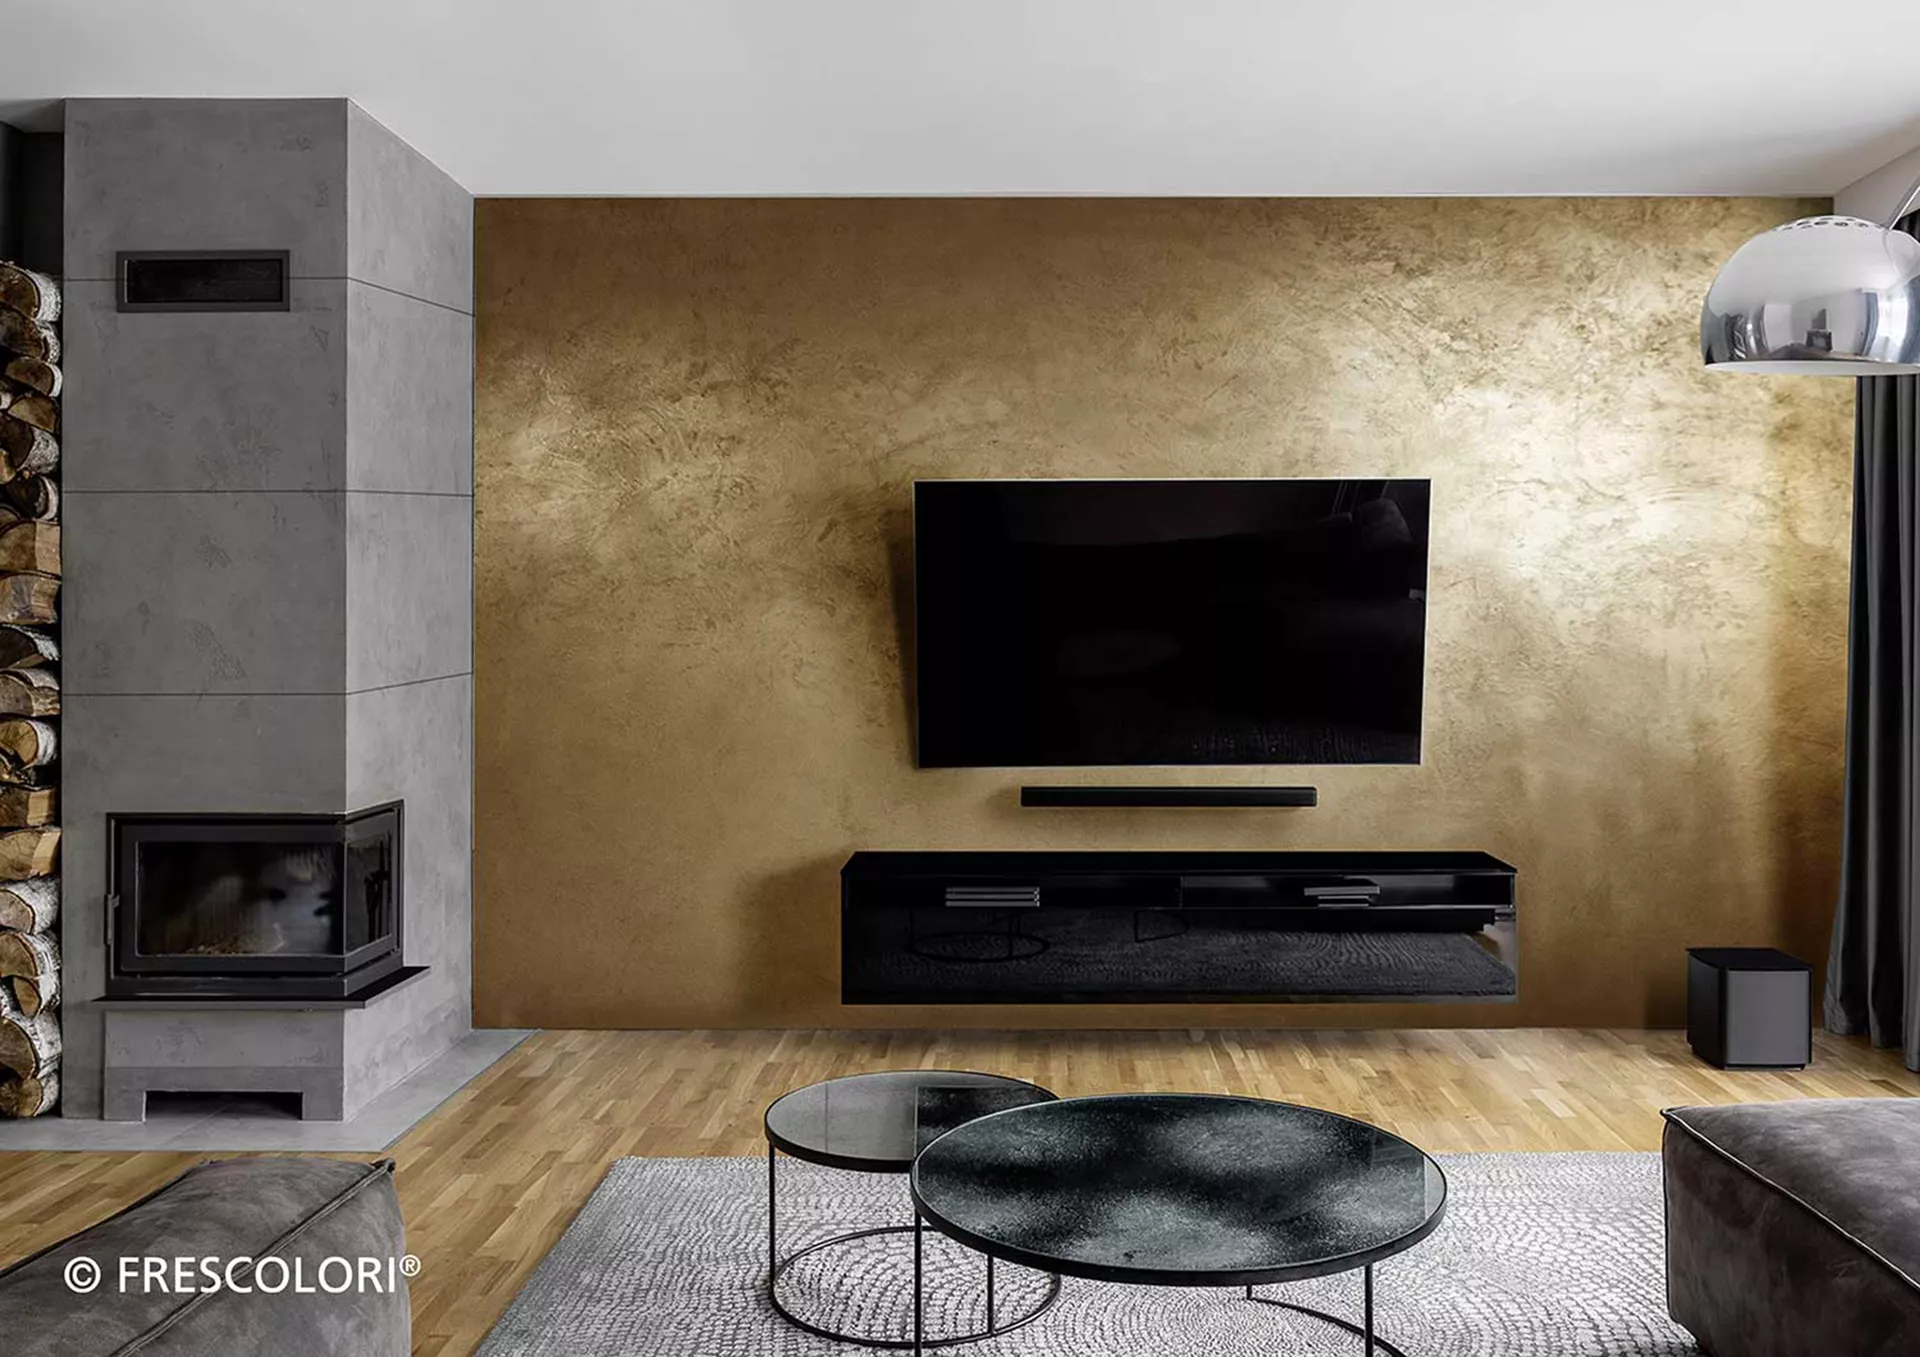 Wohnzimmer mit Kamin und Fernseher der an Wand in Echtmetall Design befestigt ist